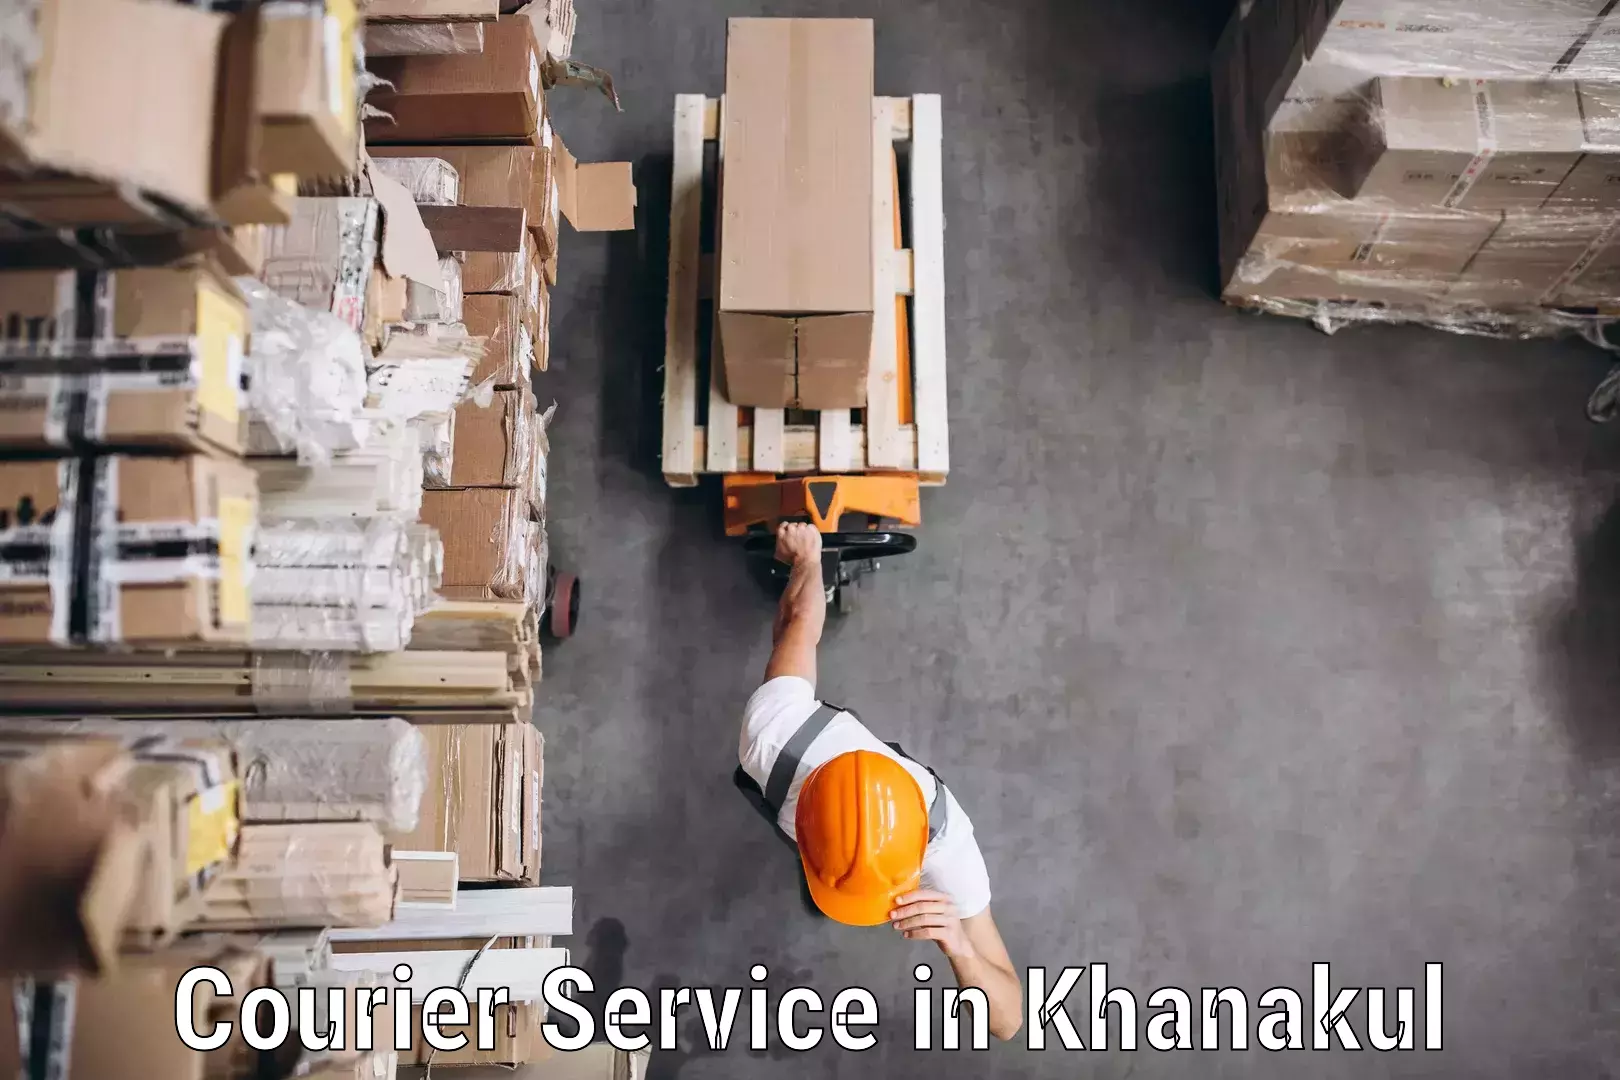 E-commerce logistics support in Khanakul